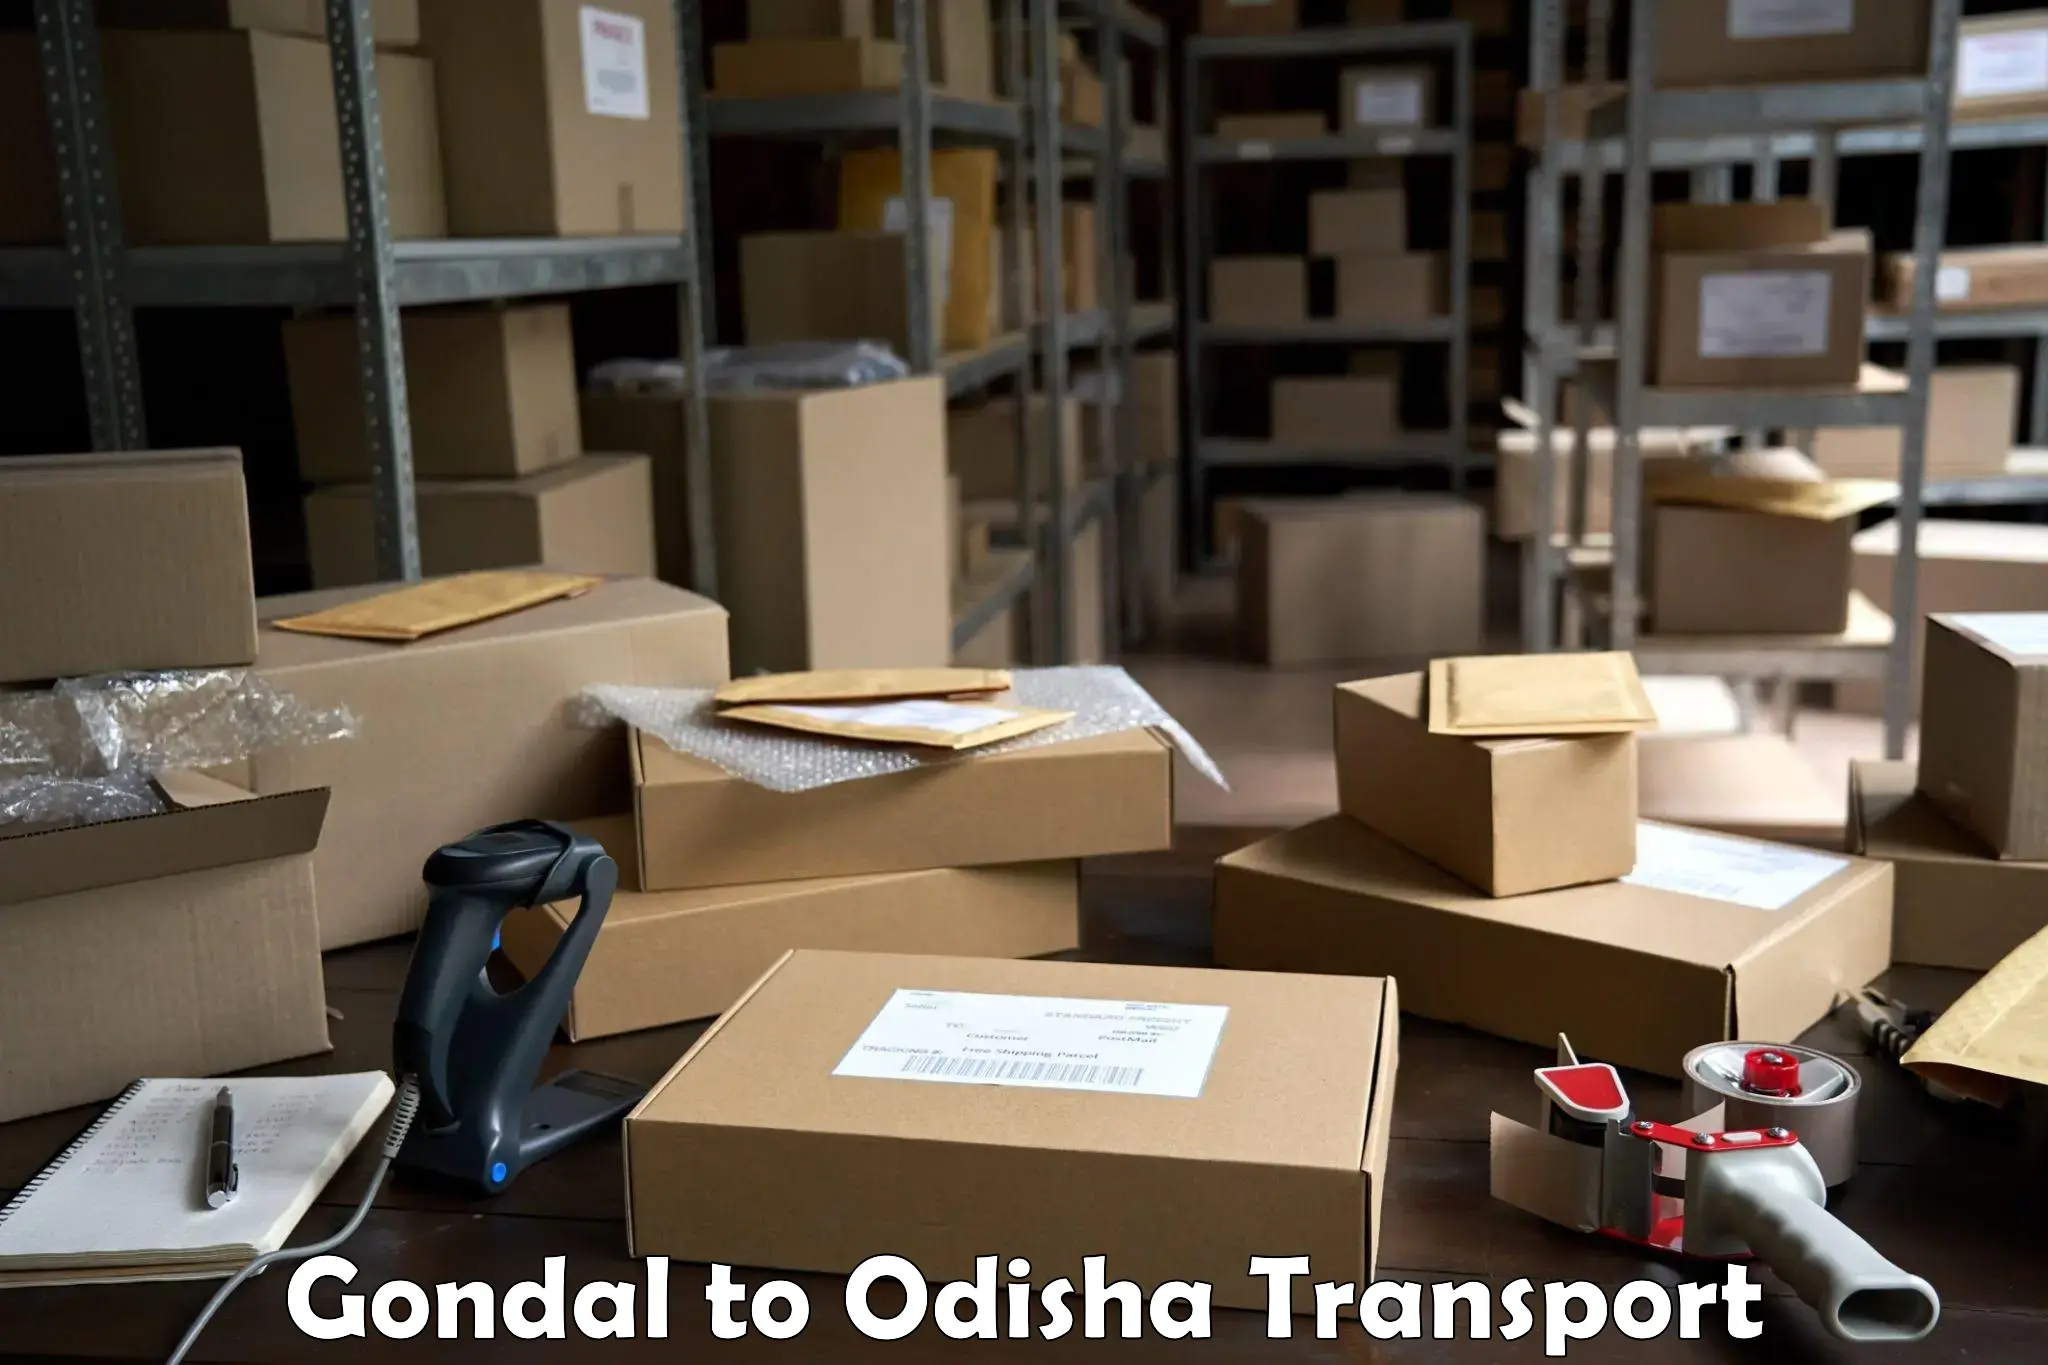 Daily transport service Gondal to Kodala